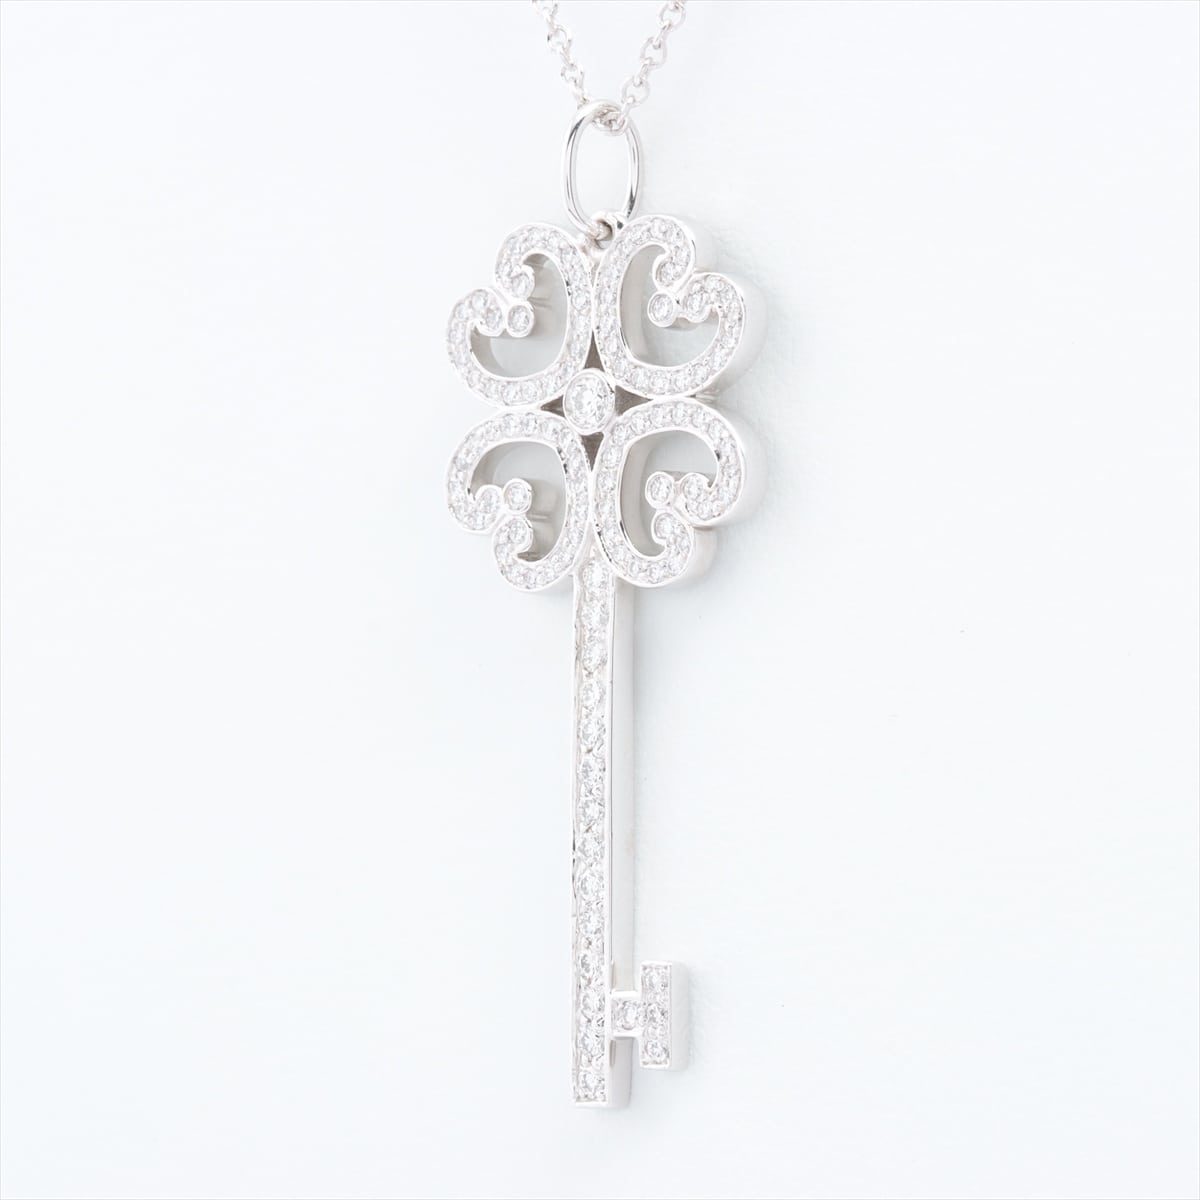 Tiffany Quatra Heart Key diamond Necklace 750 WG Pt950 6.0g